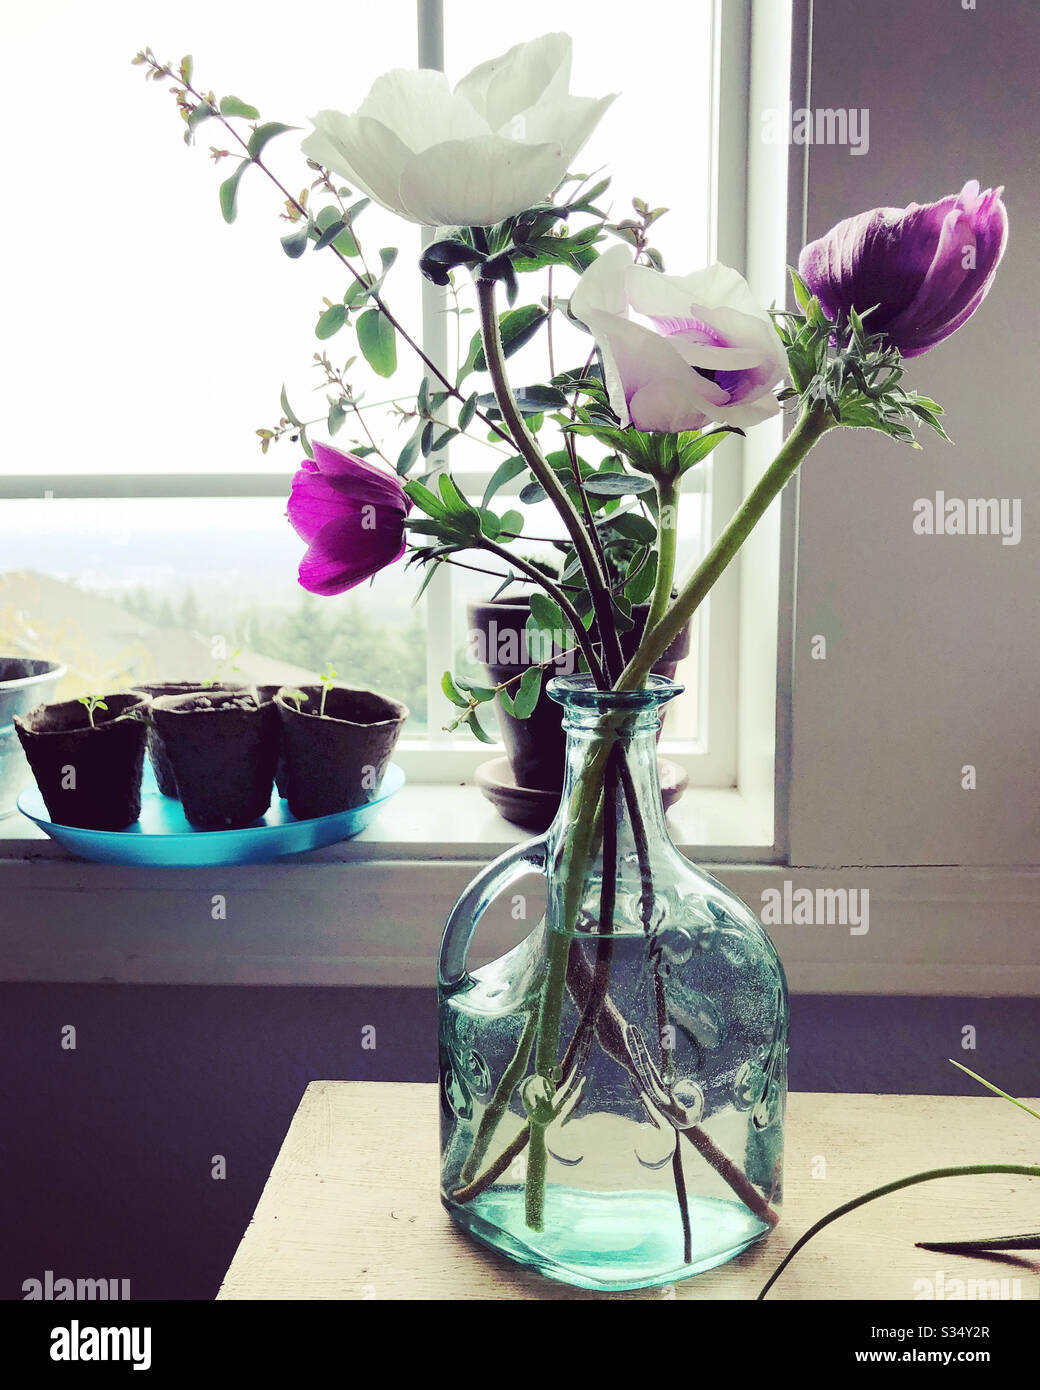 Fleurs violettes et blanches dans un vase. Banque D'Images